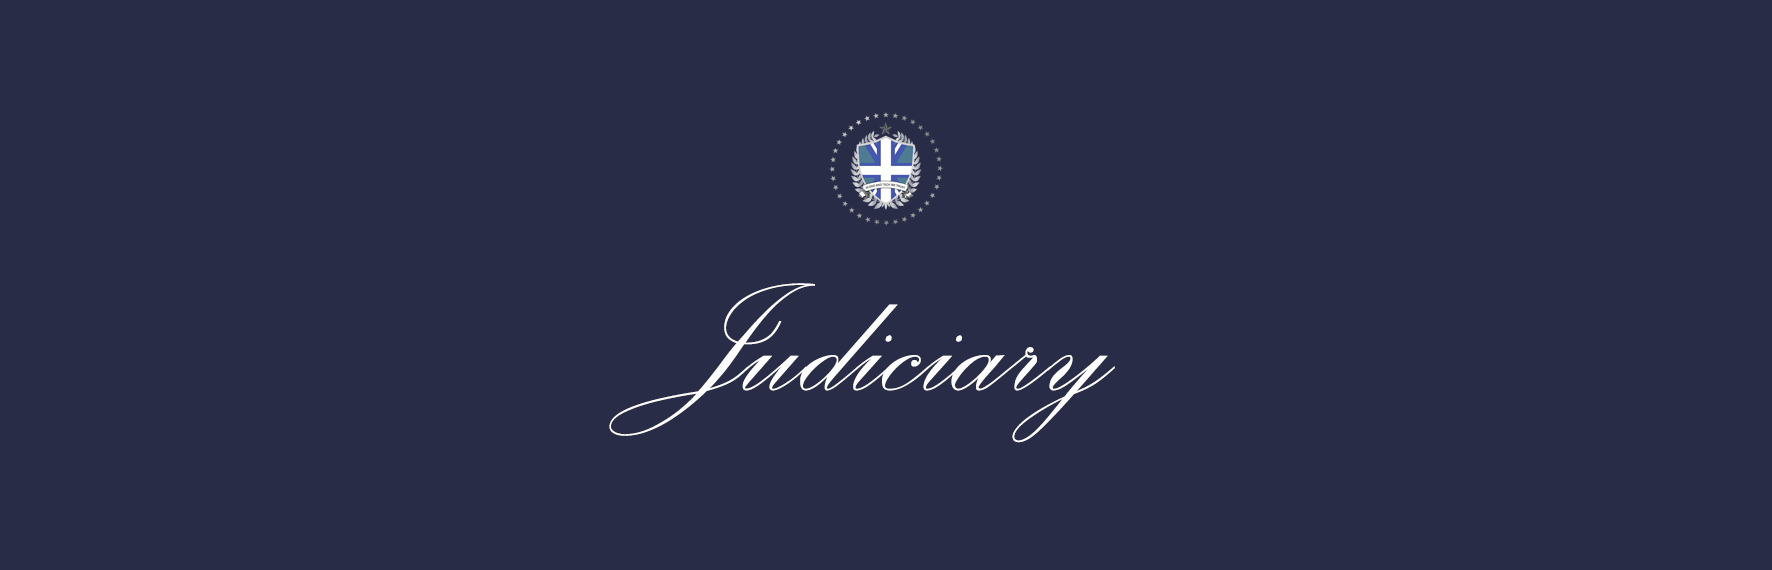 Judiciary.png